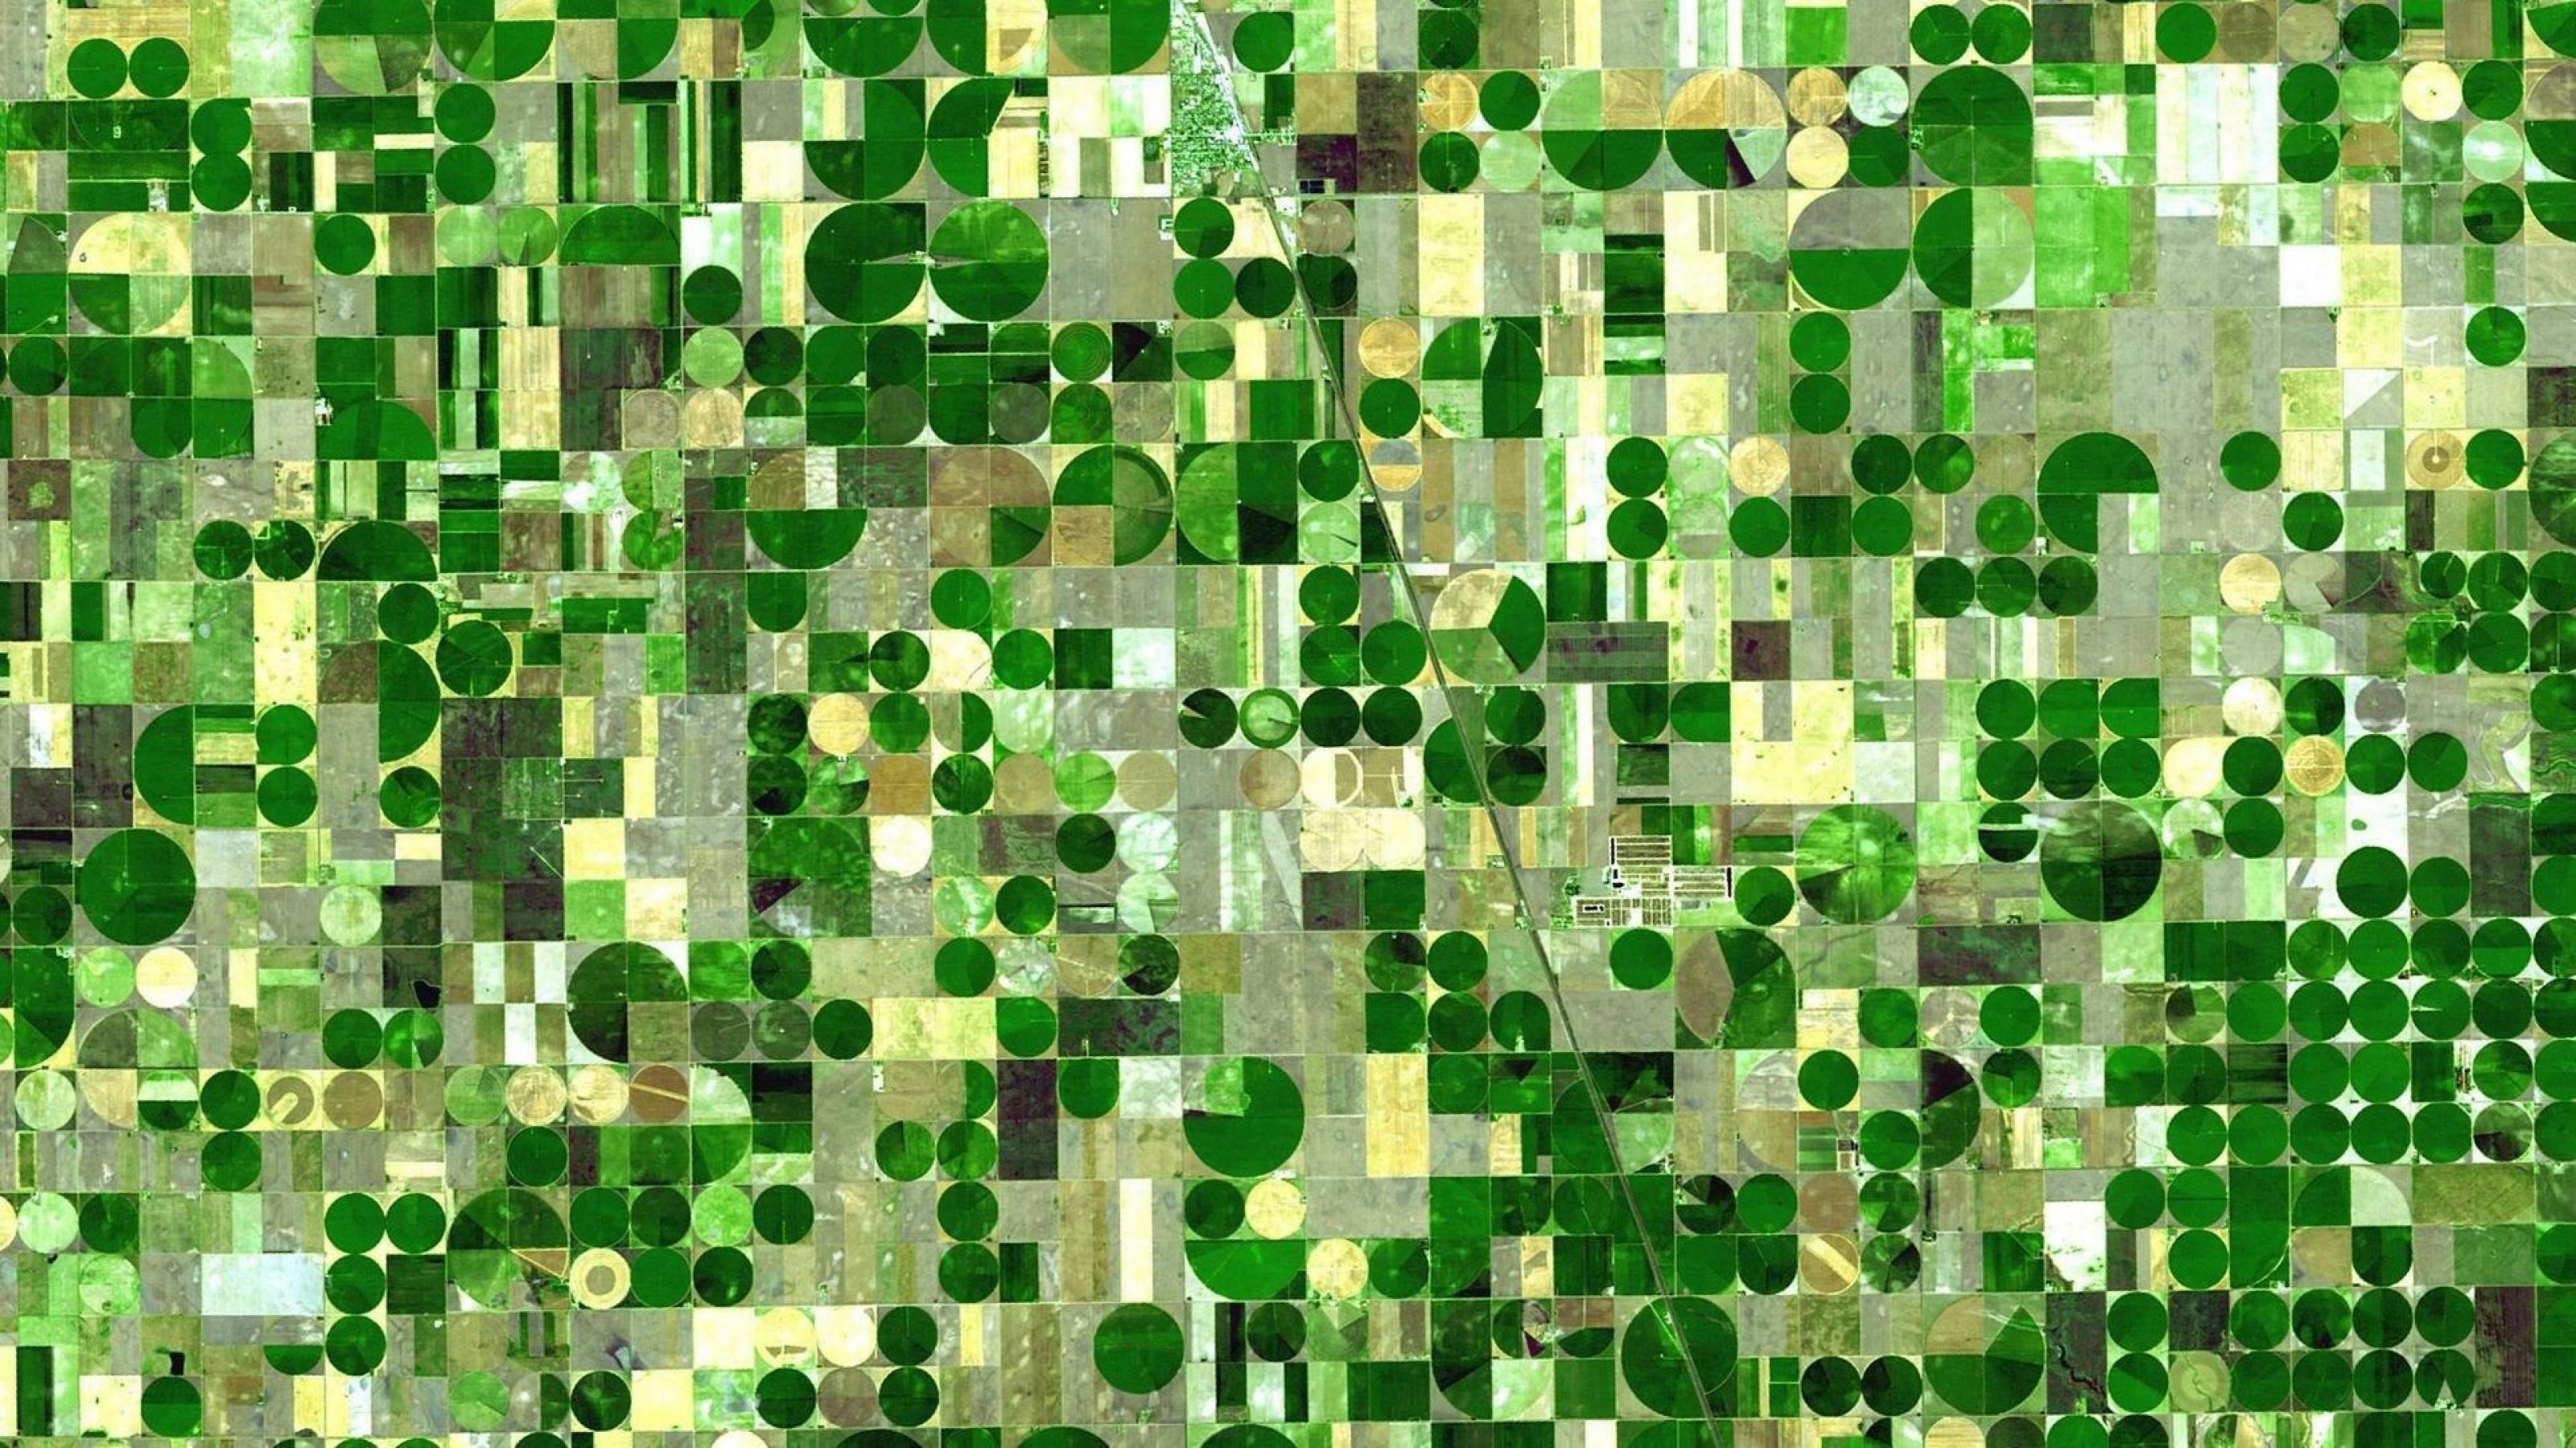 Satellitenaufnahme eines Agrargebiets, in dem in Kreisen bewässert wird, so dass ein Mosaik grüner Kreise entsteht.